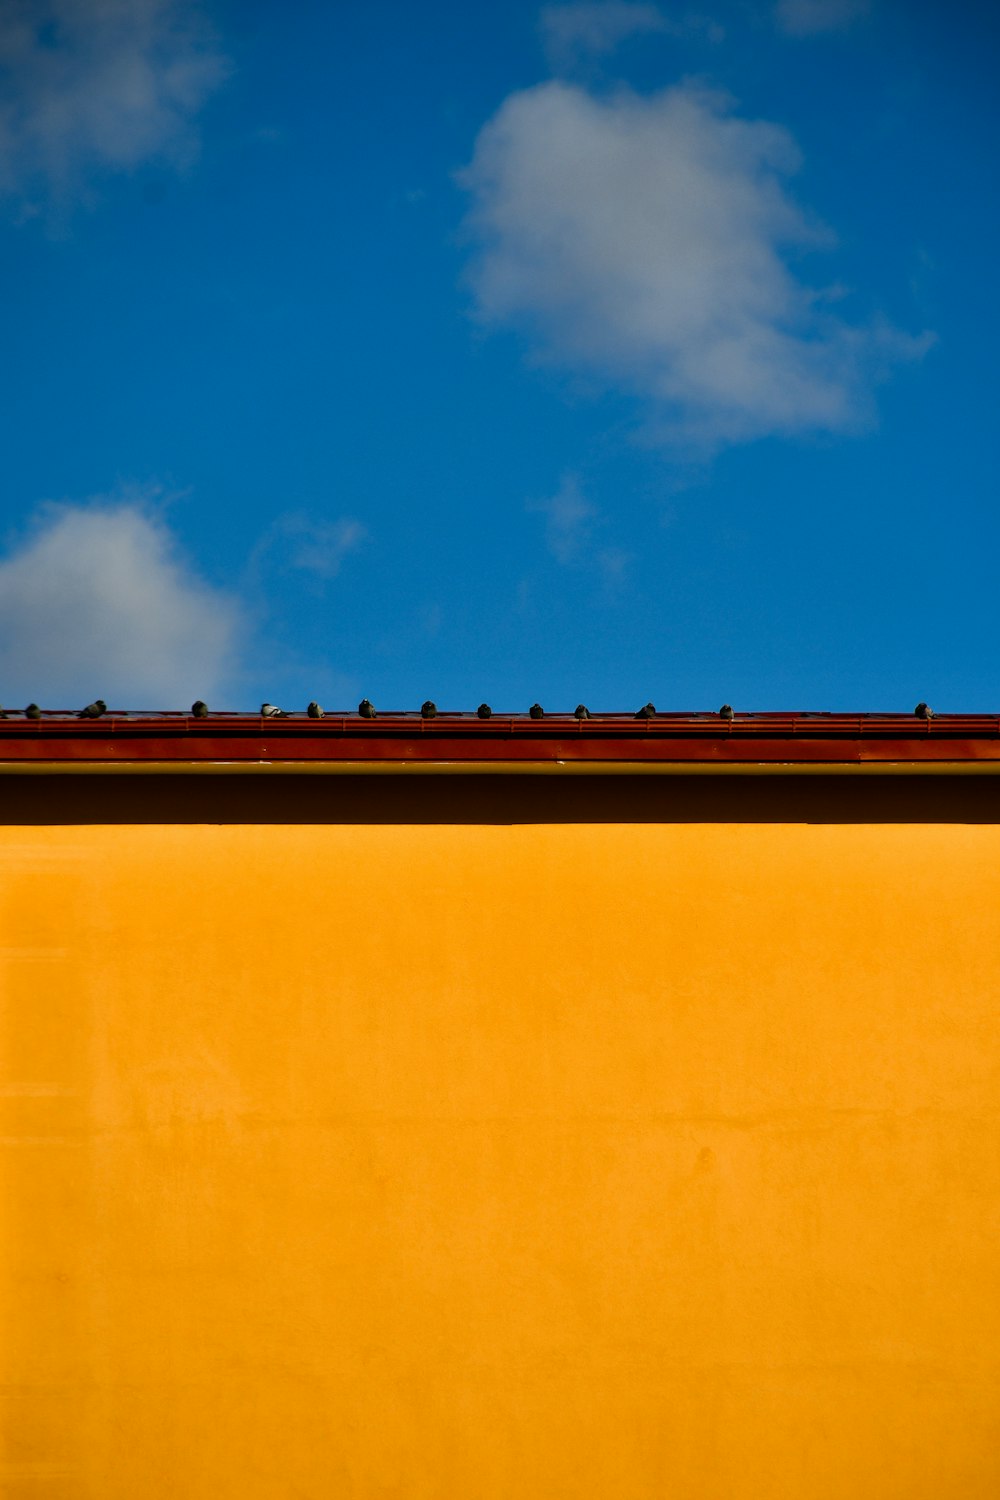 edificio in cemento marrone sotto il cielo blu